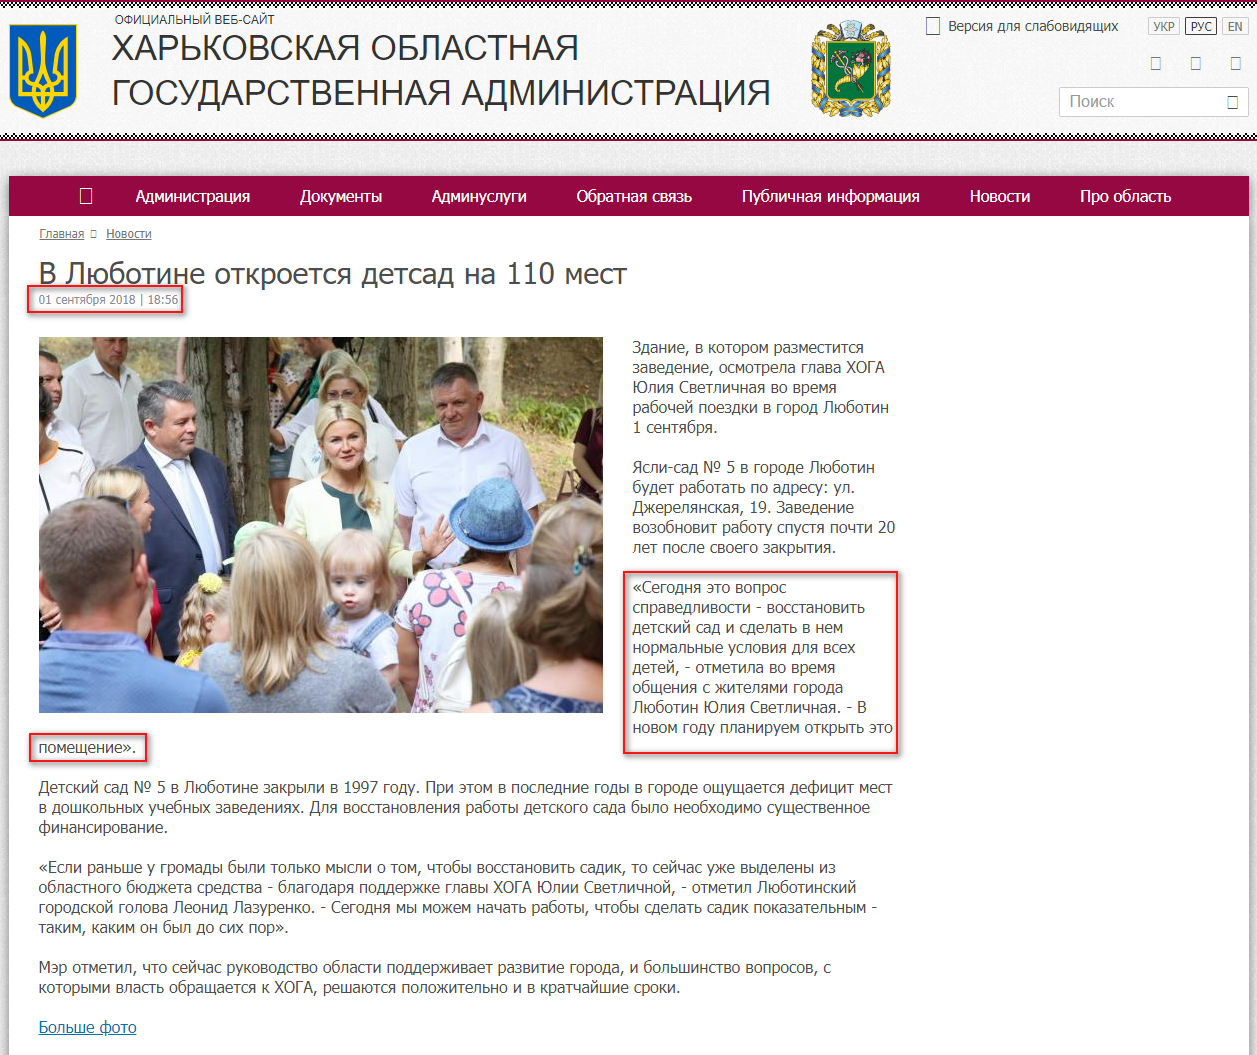 http://kharkivoda.gov.ua/ru/news/94627